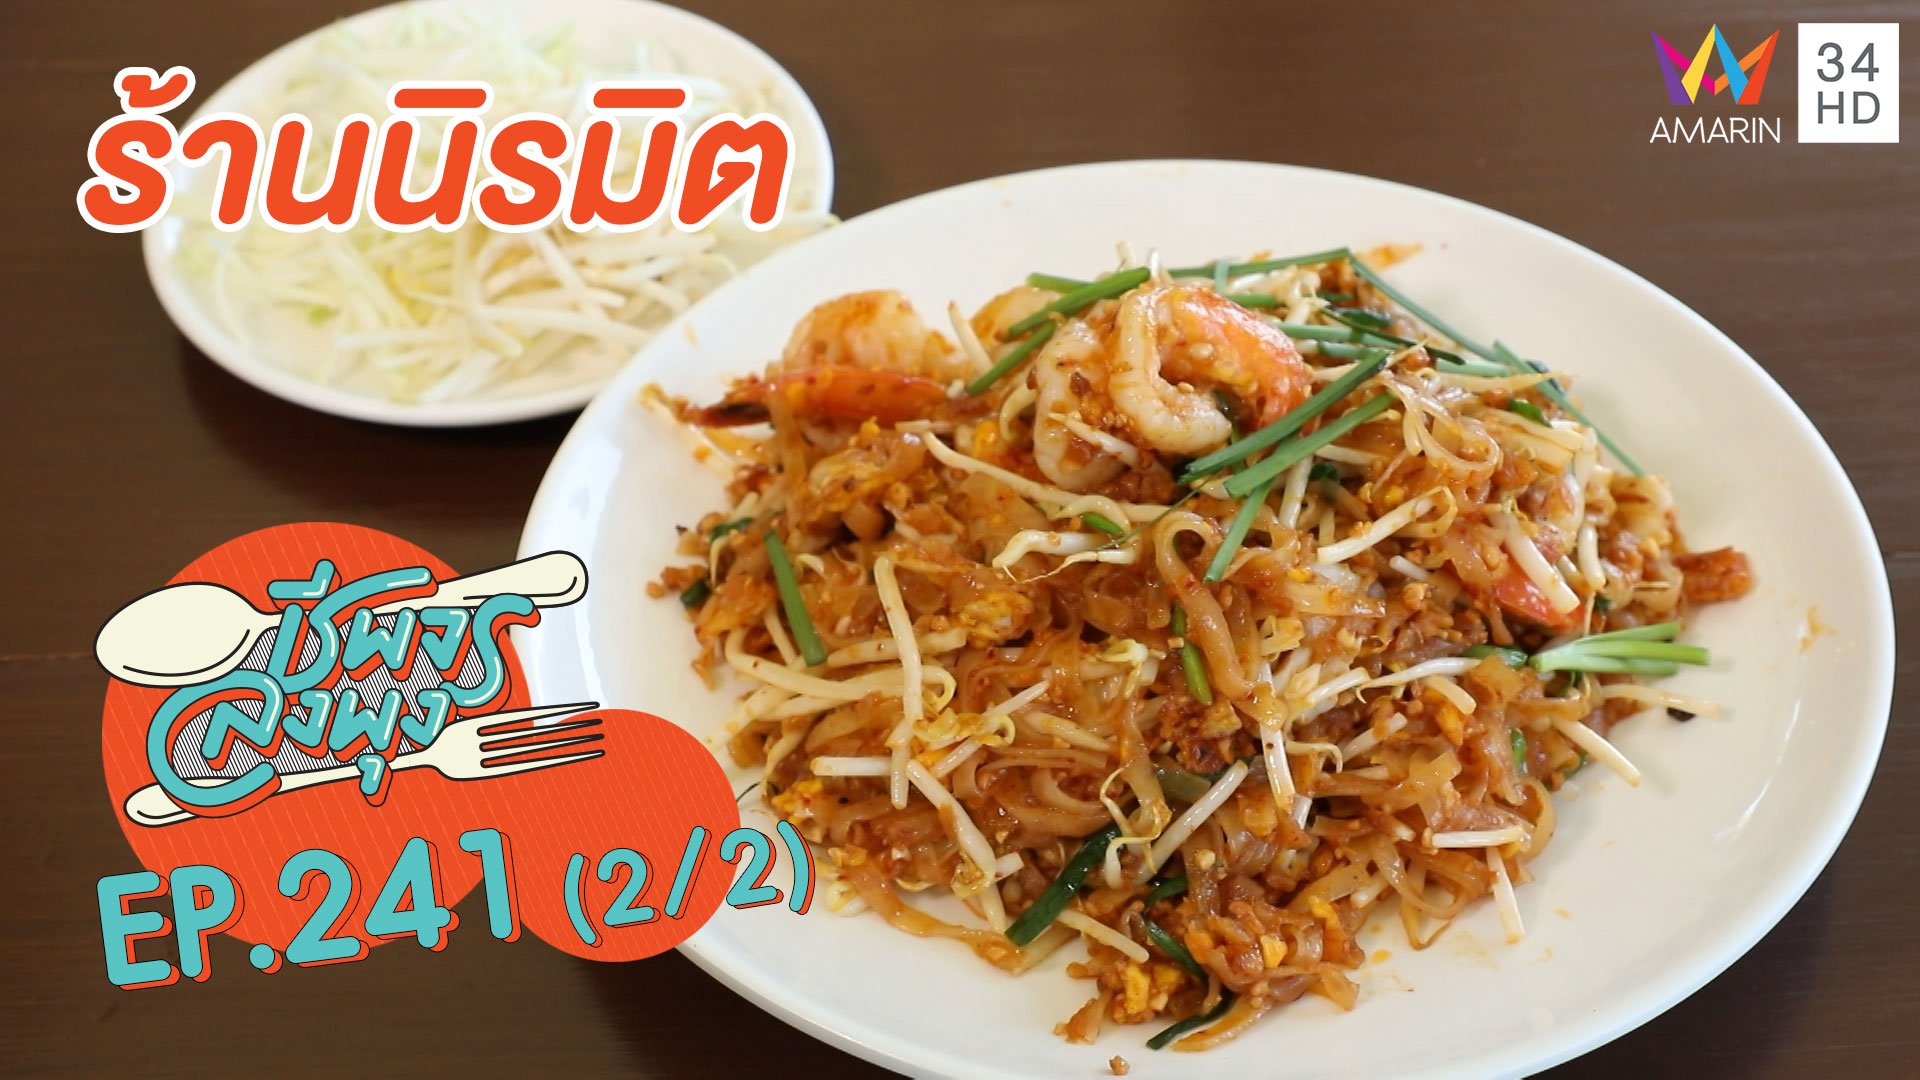 ลิ้มรสอาหารไทยแท้ๆ "ร้านนิรมิต" | ชีพจรลงพุง | 27 ก.ย. 63 (2/2) | AMARIN TVHD34